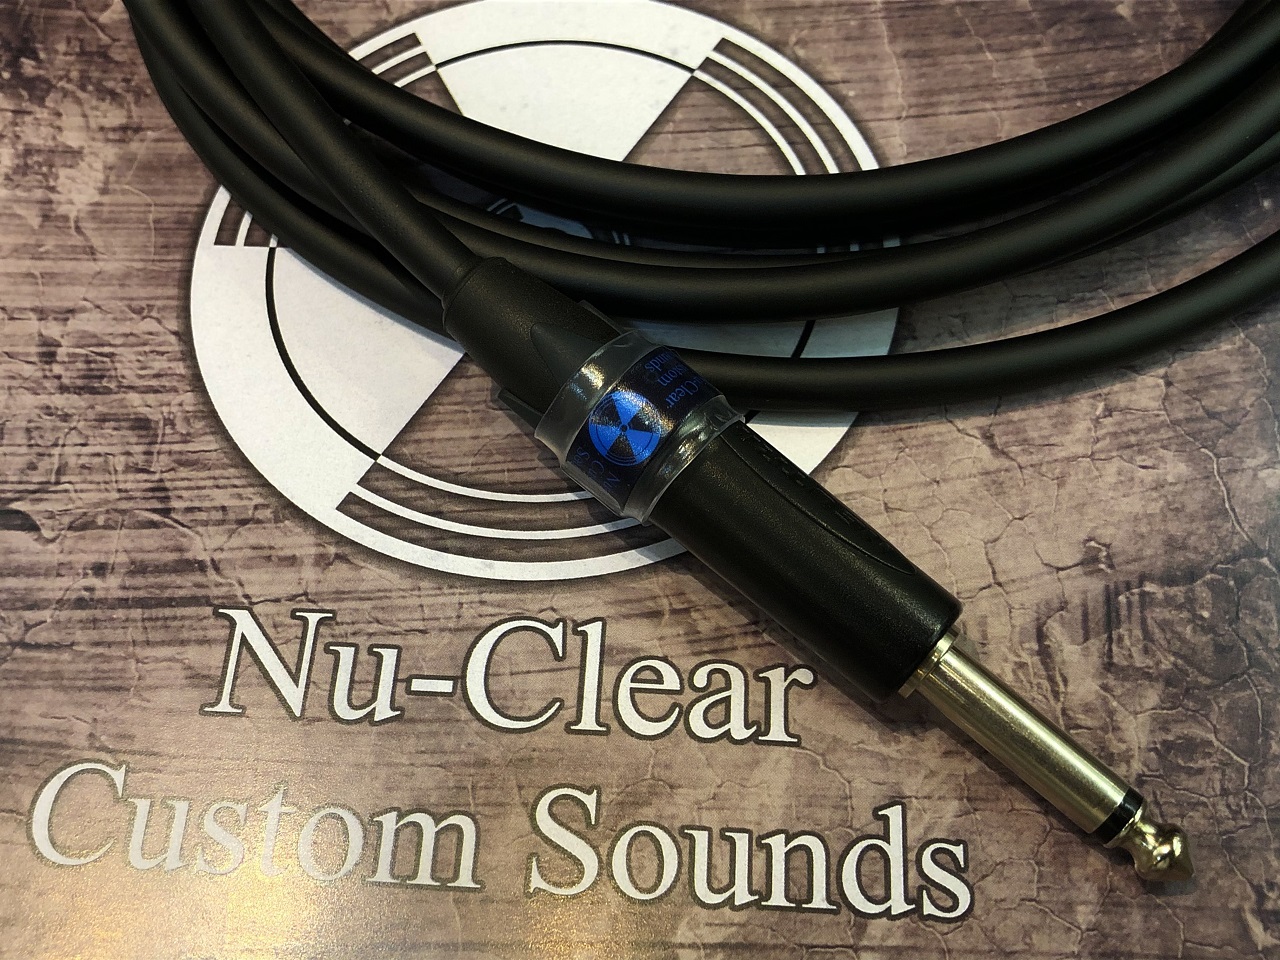 【お取り寄せ商品】Nu-Clear Custom Sounds XC01 QUANTUM 7.0mSL